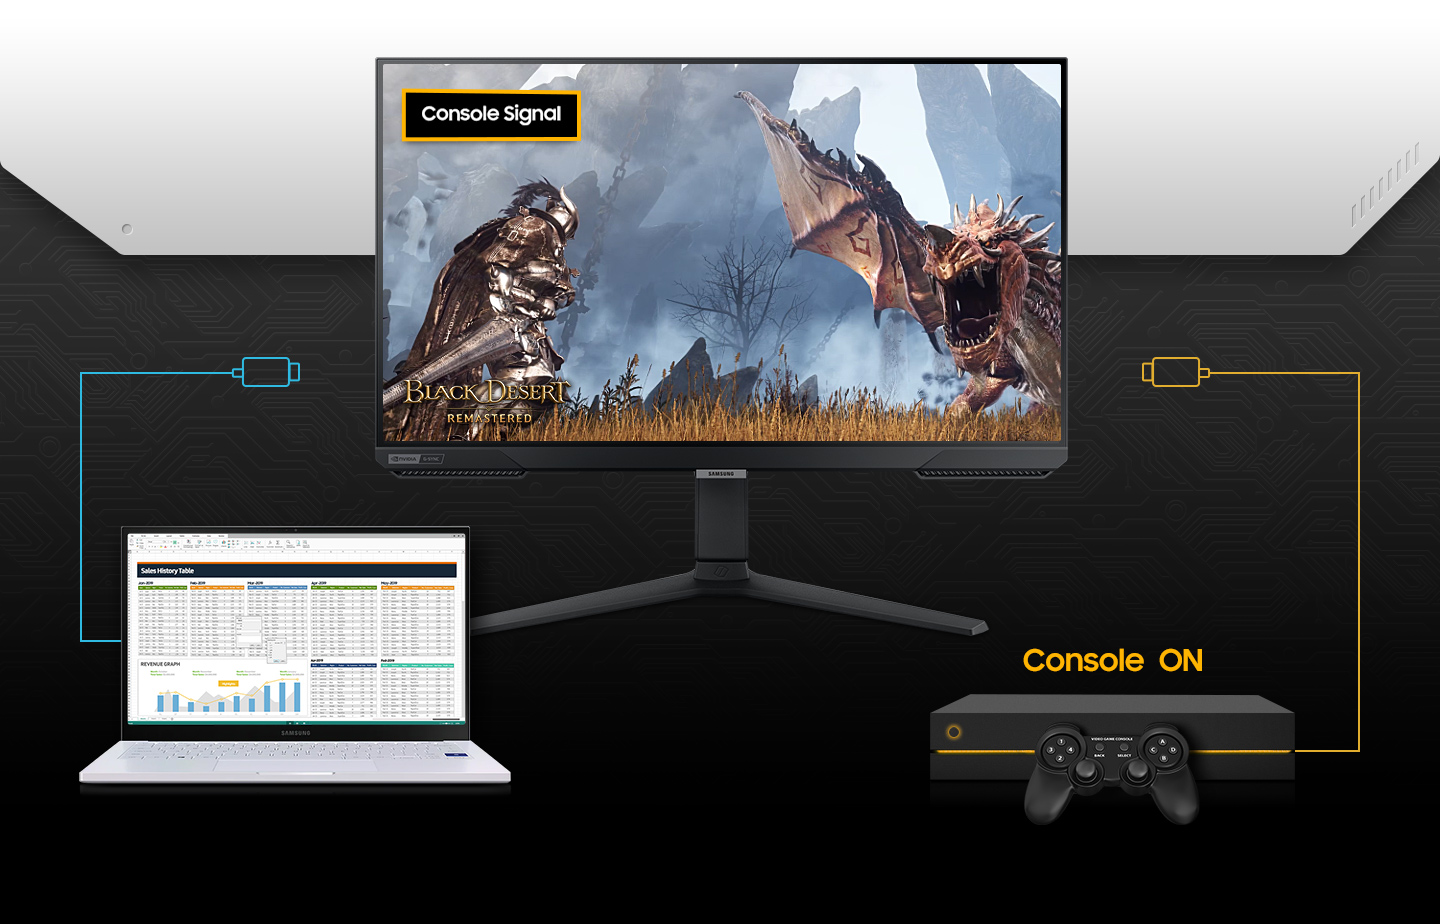 27 Inch Odyssey G4 Gaming Monitor FHD